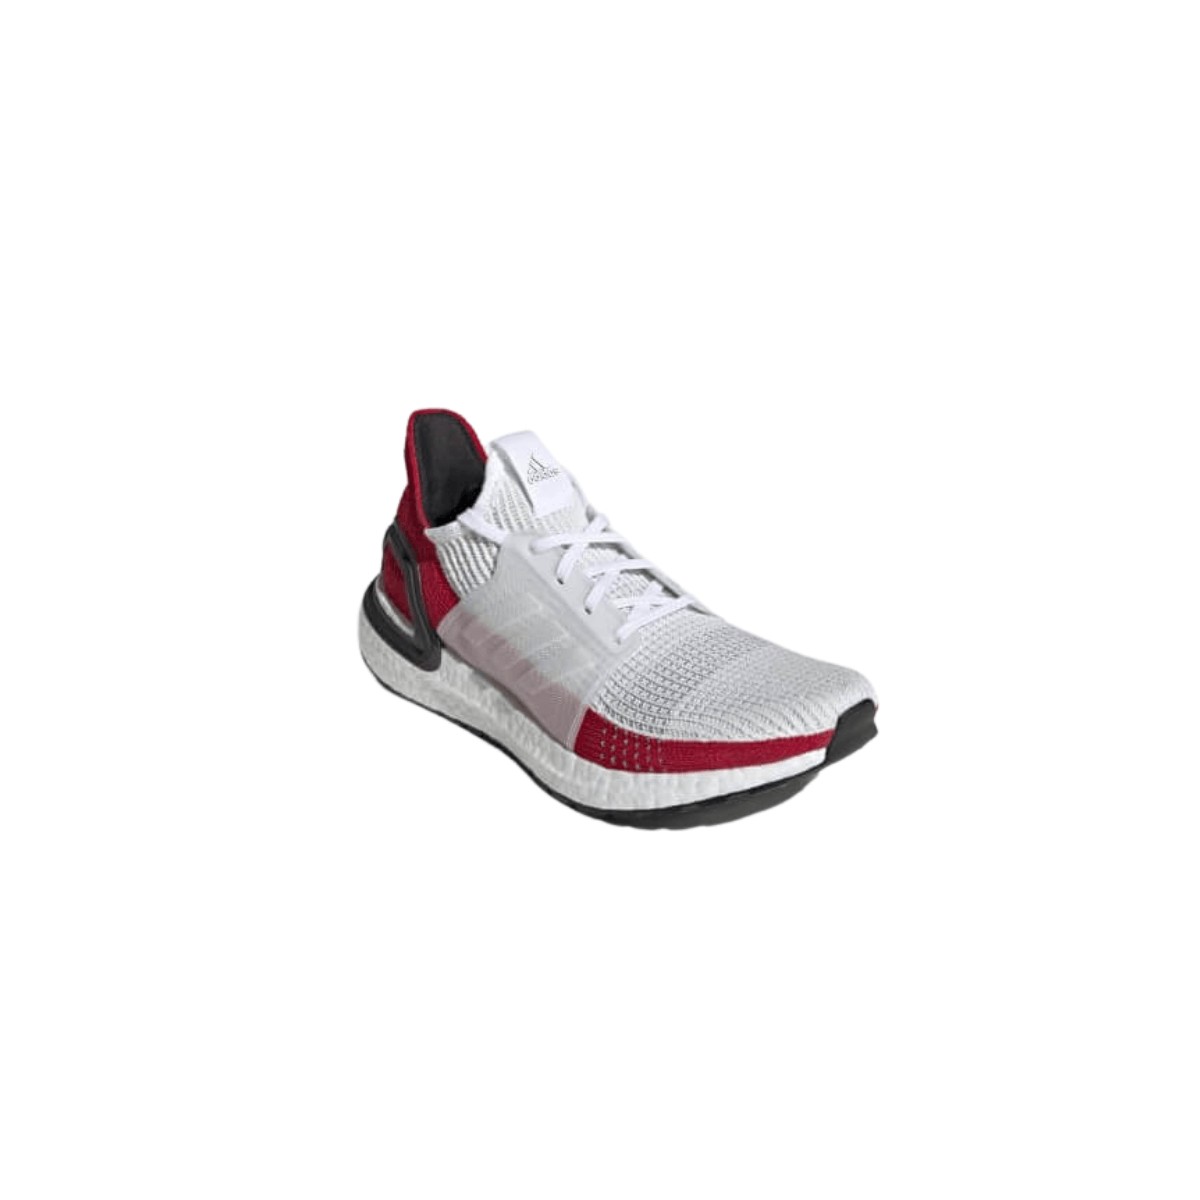 Zapatillas Adidas Ultra Boost blanco rojo